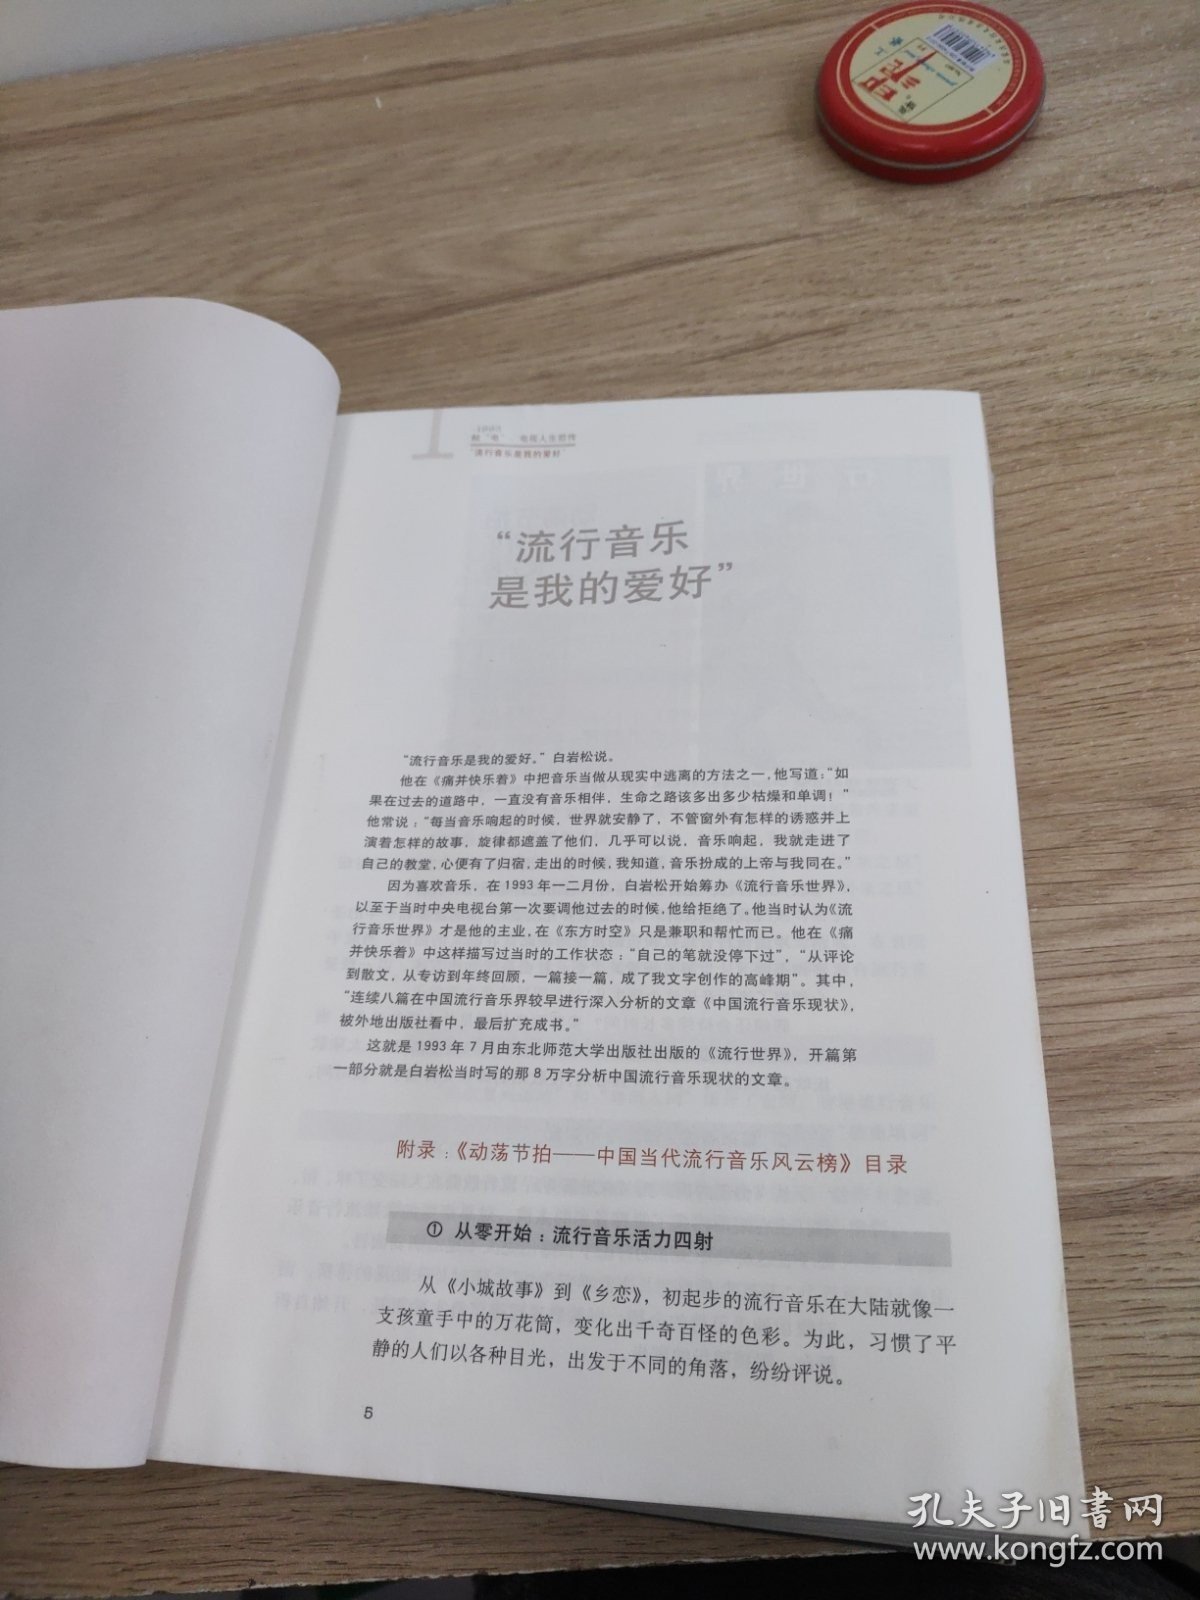 一个人与这个时代：白岩松二十年央视成长记录 上海交通大学出版社